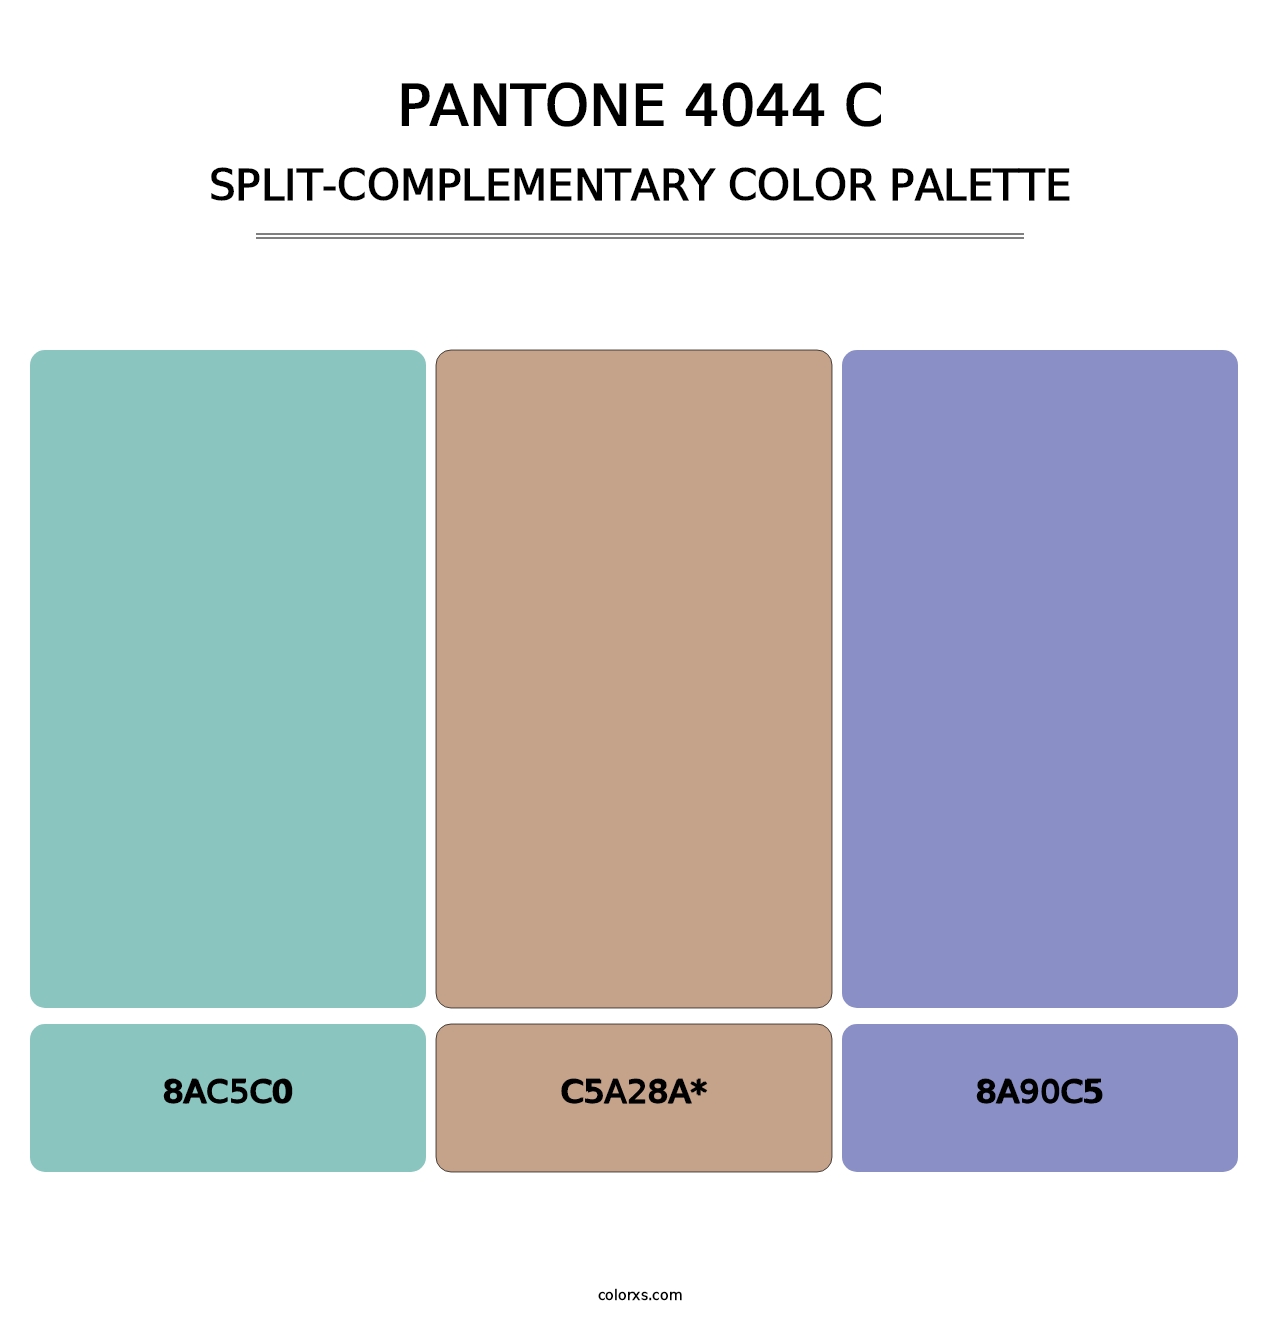 PANTONE 4044 C - Split-Complementary Color Palette